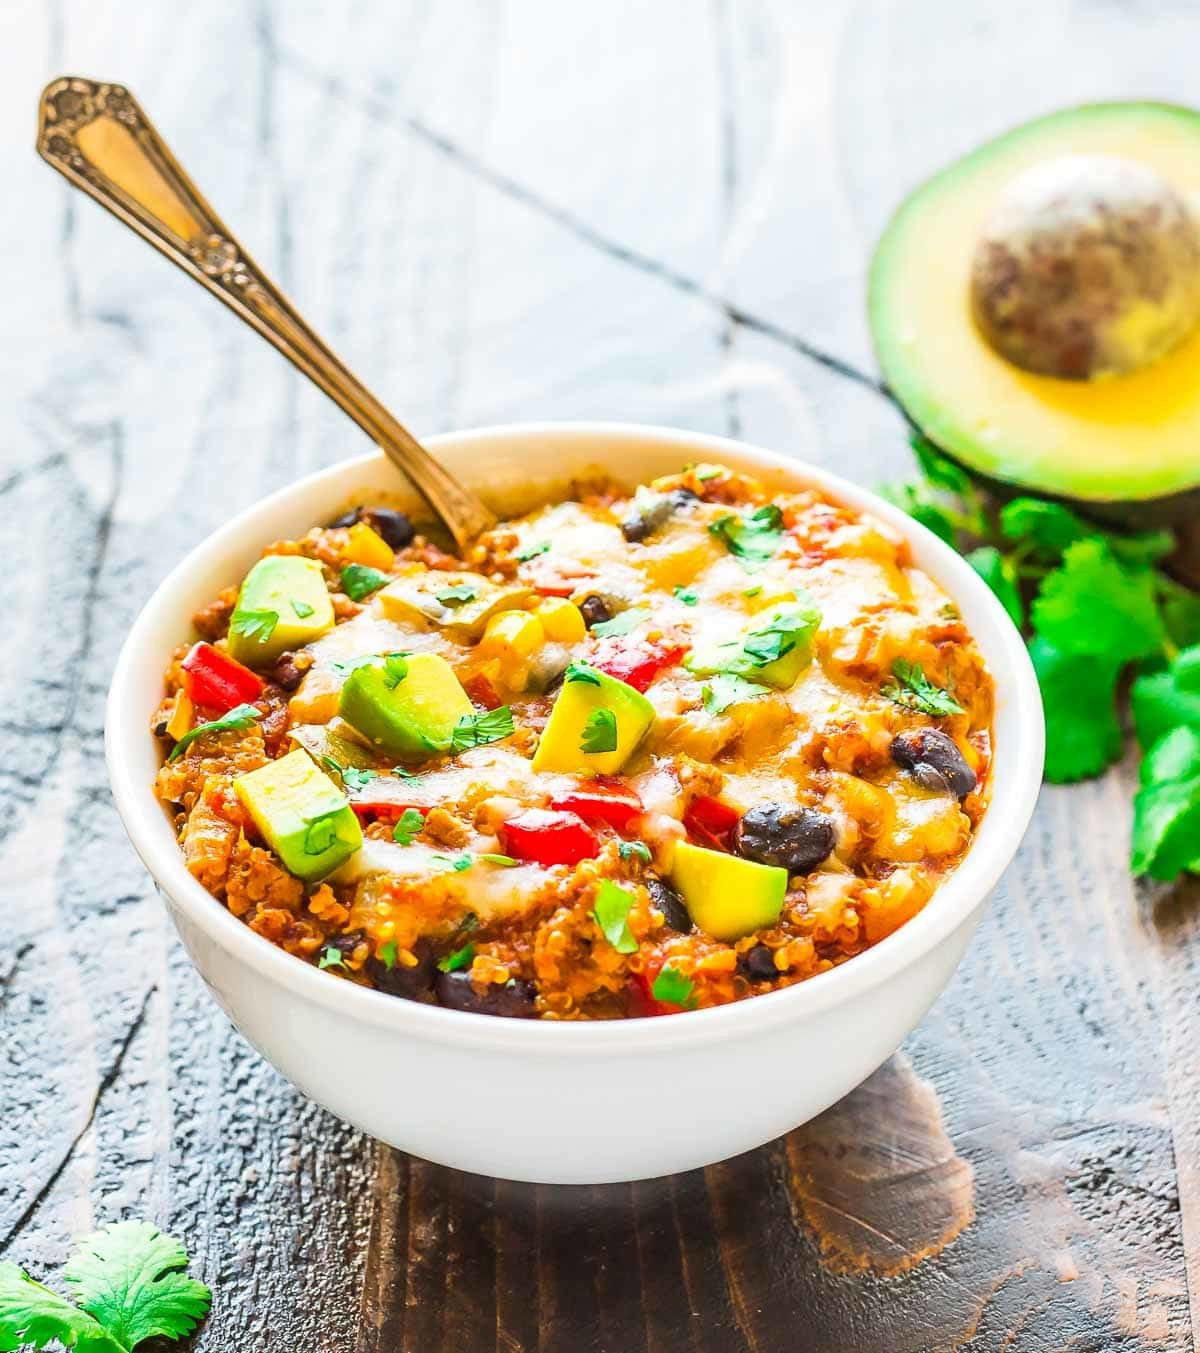 Healthy Mexican Food Recipes
 Crock Pot Mexican Casserole